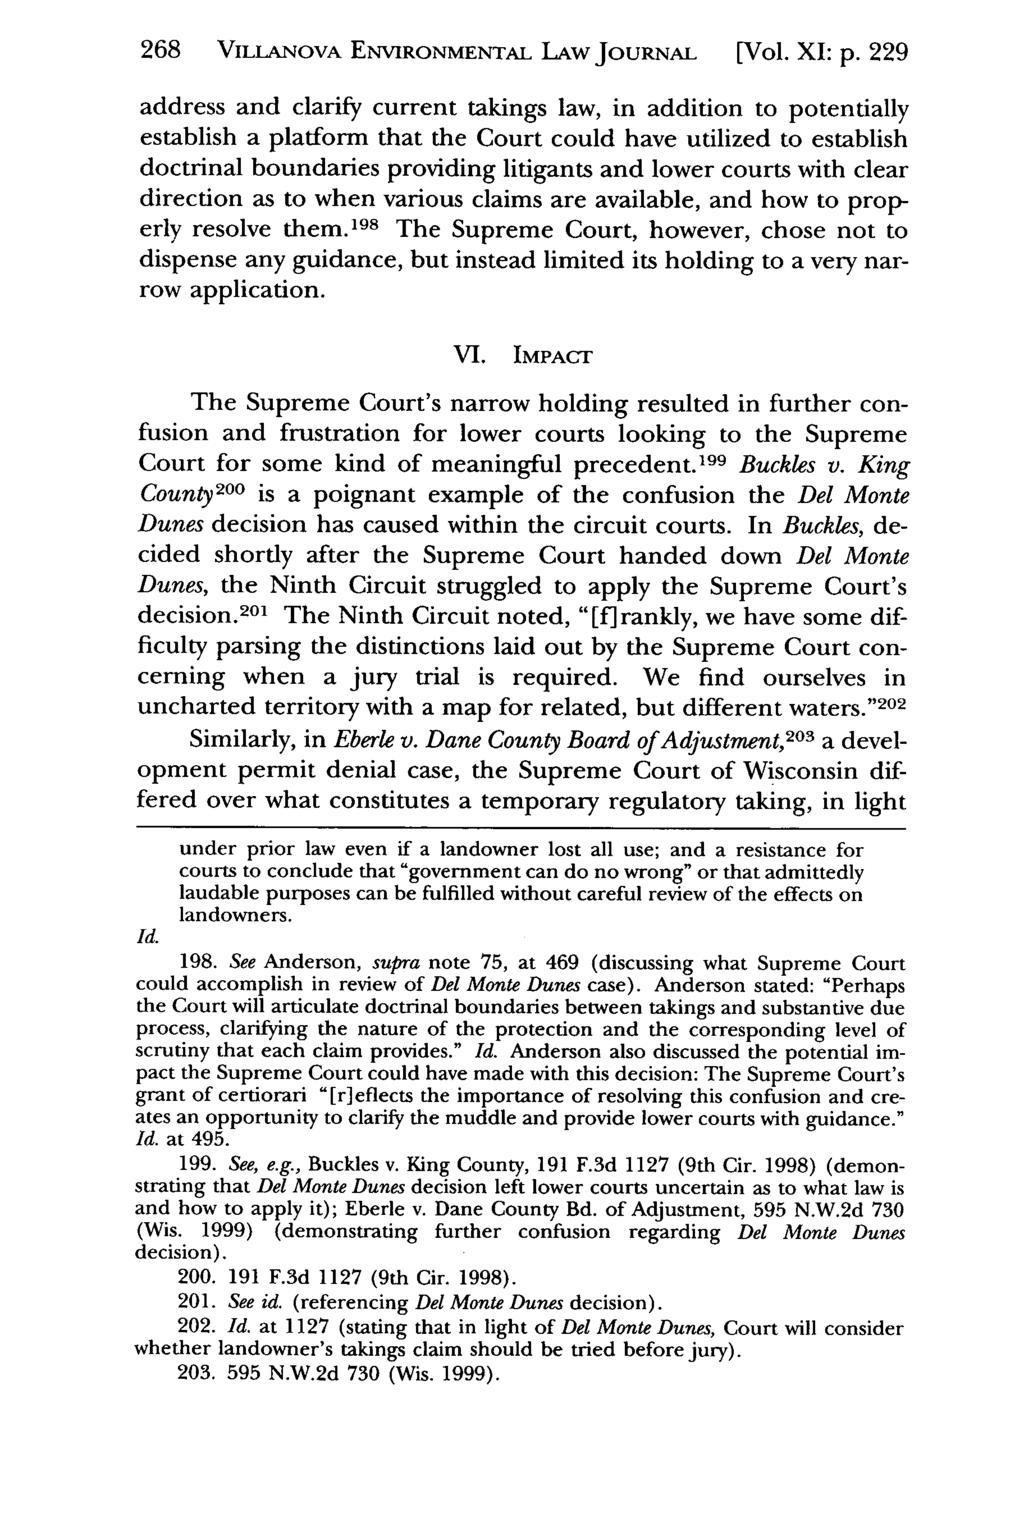 268 VILLANOVA Villanova Environmental ENVIRONMENTAL Law Journal, LAW Vol. 11, JouRNAL Iss. 1 [2000], Art. [Vol. 7 XI: p.